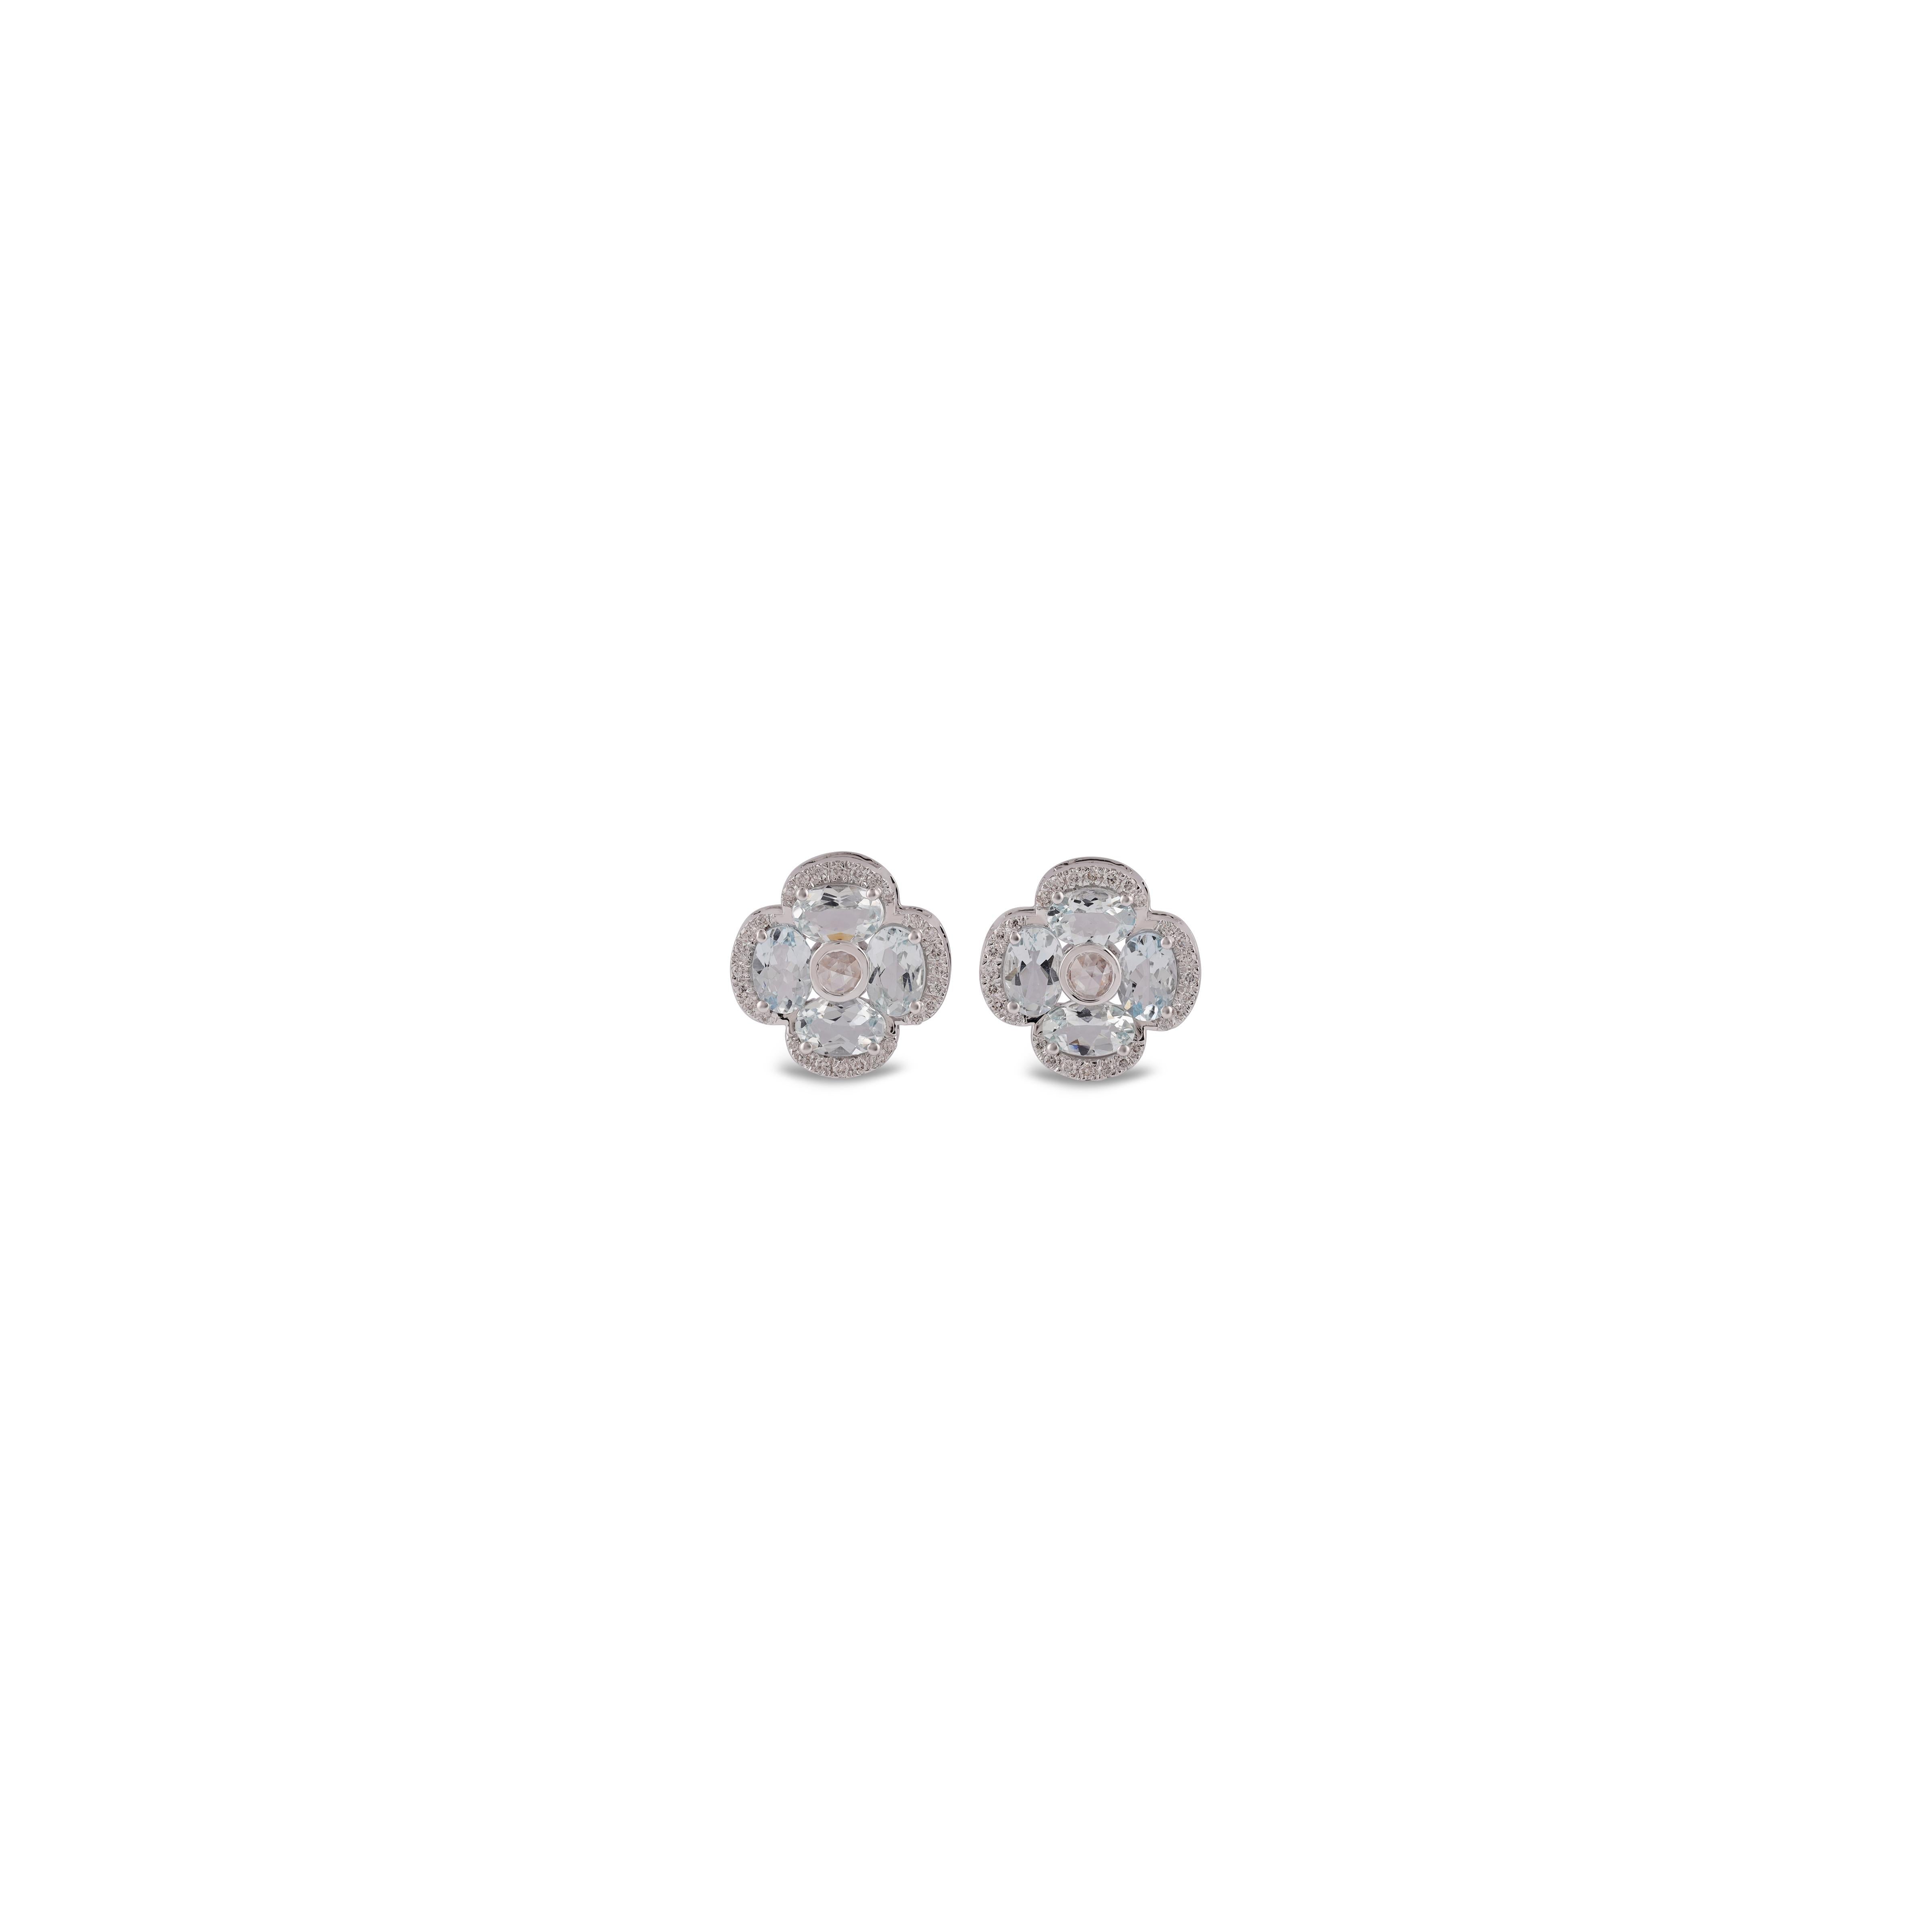 Une paire étonnante, fine et impressionnante de  Aigue-marine de 2,85 carats et diamant rond de 0,29 carat, diamant taille rose de 0,12 carat en or blanc massif 18k. 

Les clous d'oreilles créent une beauté subtile tout en mettant en valeur les